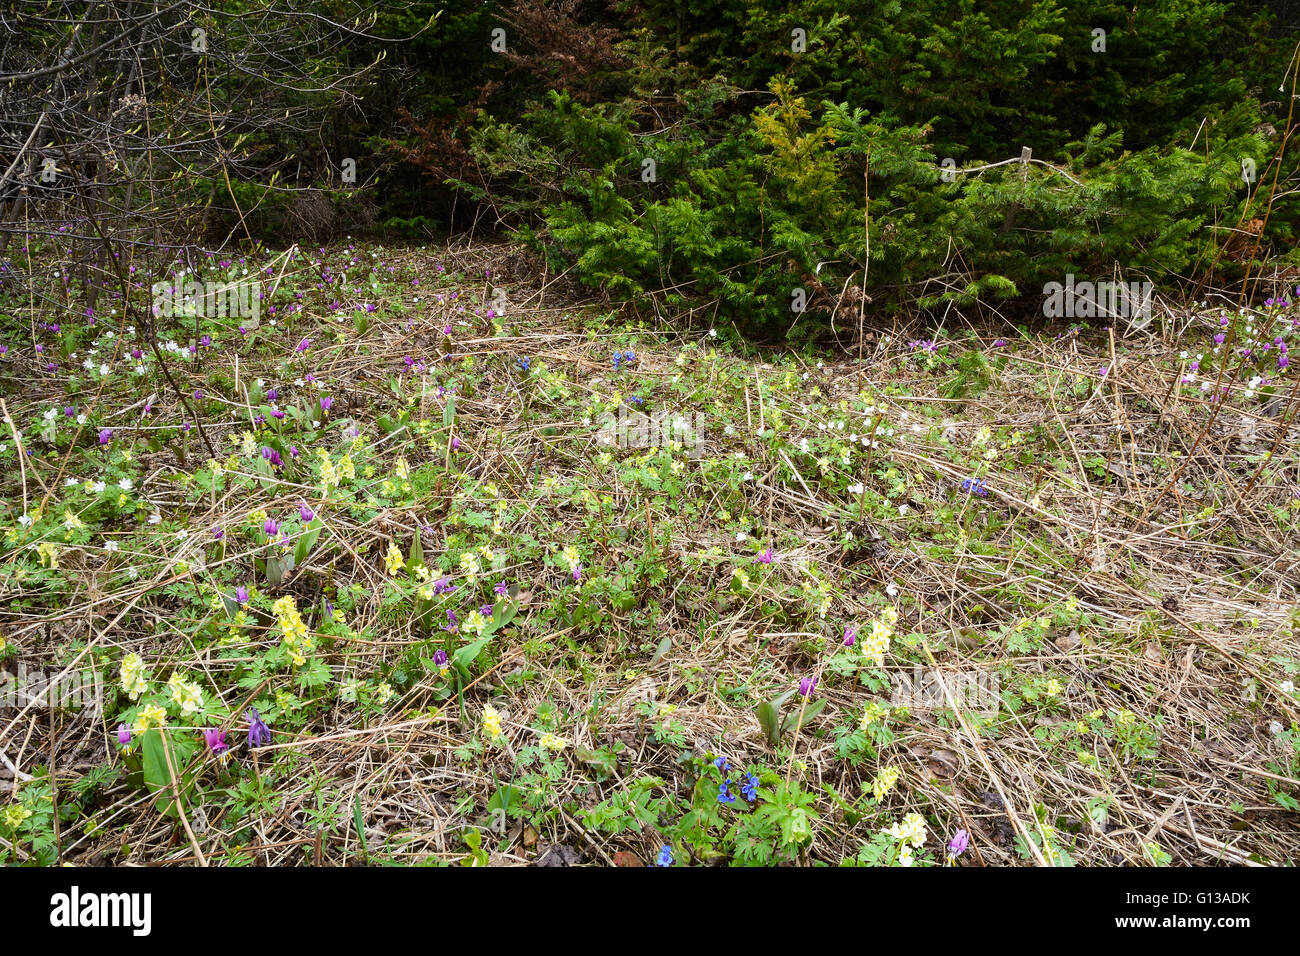 Wild primroses: Erythronium sibiricum, Anemone altaica, Corydalis bracteata and Pulmonaria mollis Stock Photo